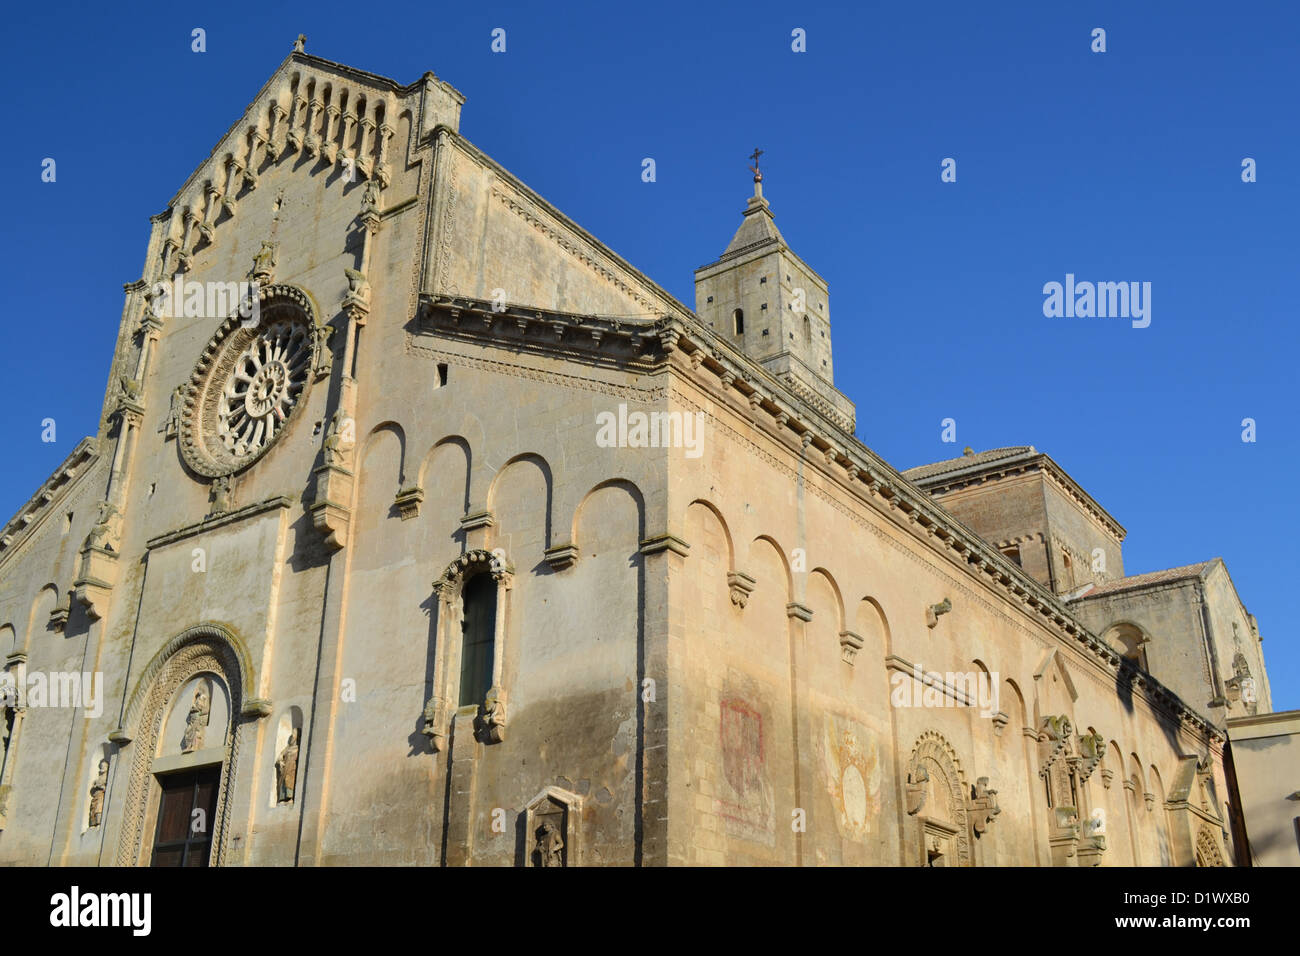 Matera Cattedrale della Madonna della Bruna, Matera città, regione Basilicata, Italia meridionale. Foto Stock